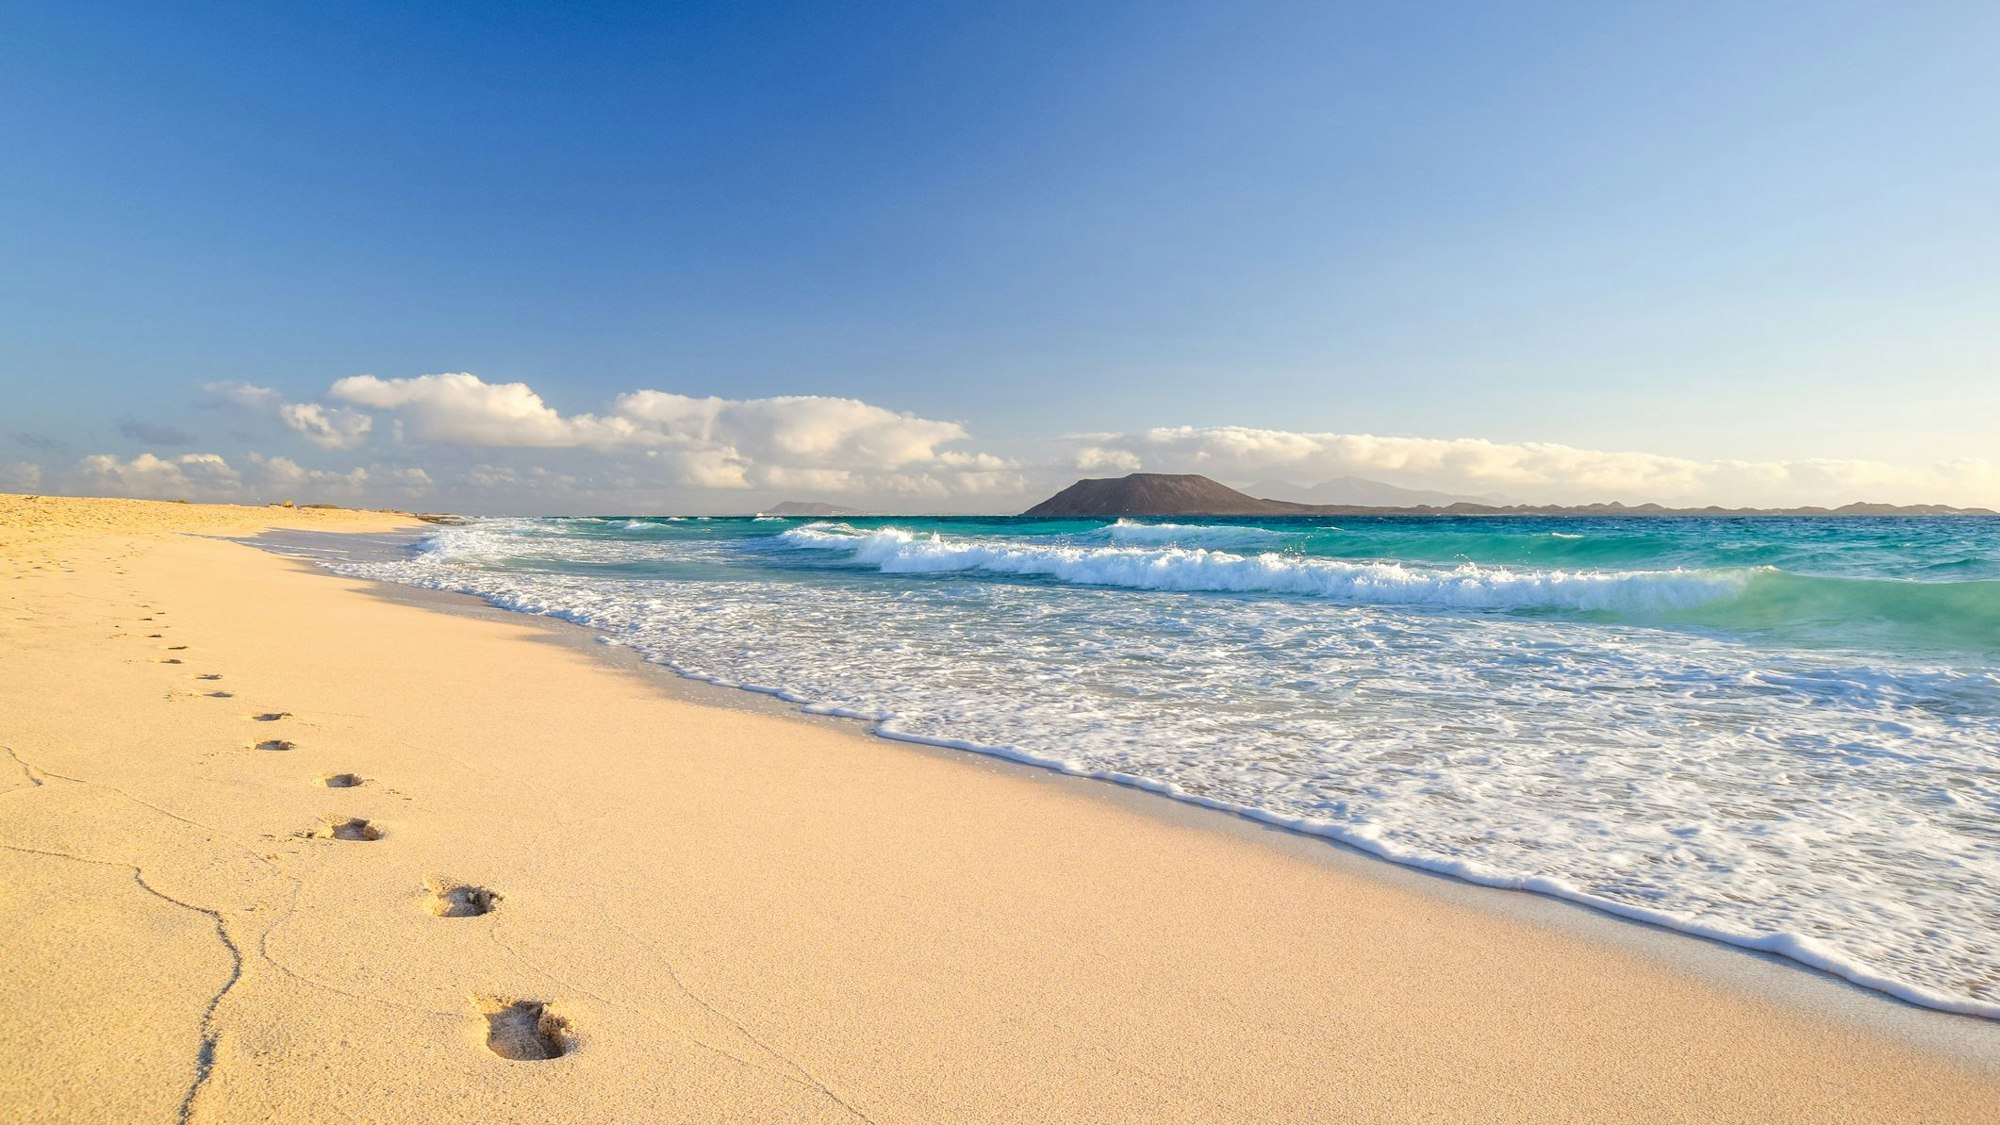 Im Sand sind Fußspuren und am Horizont ist eine Insel zu sehen.